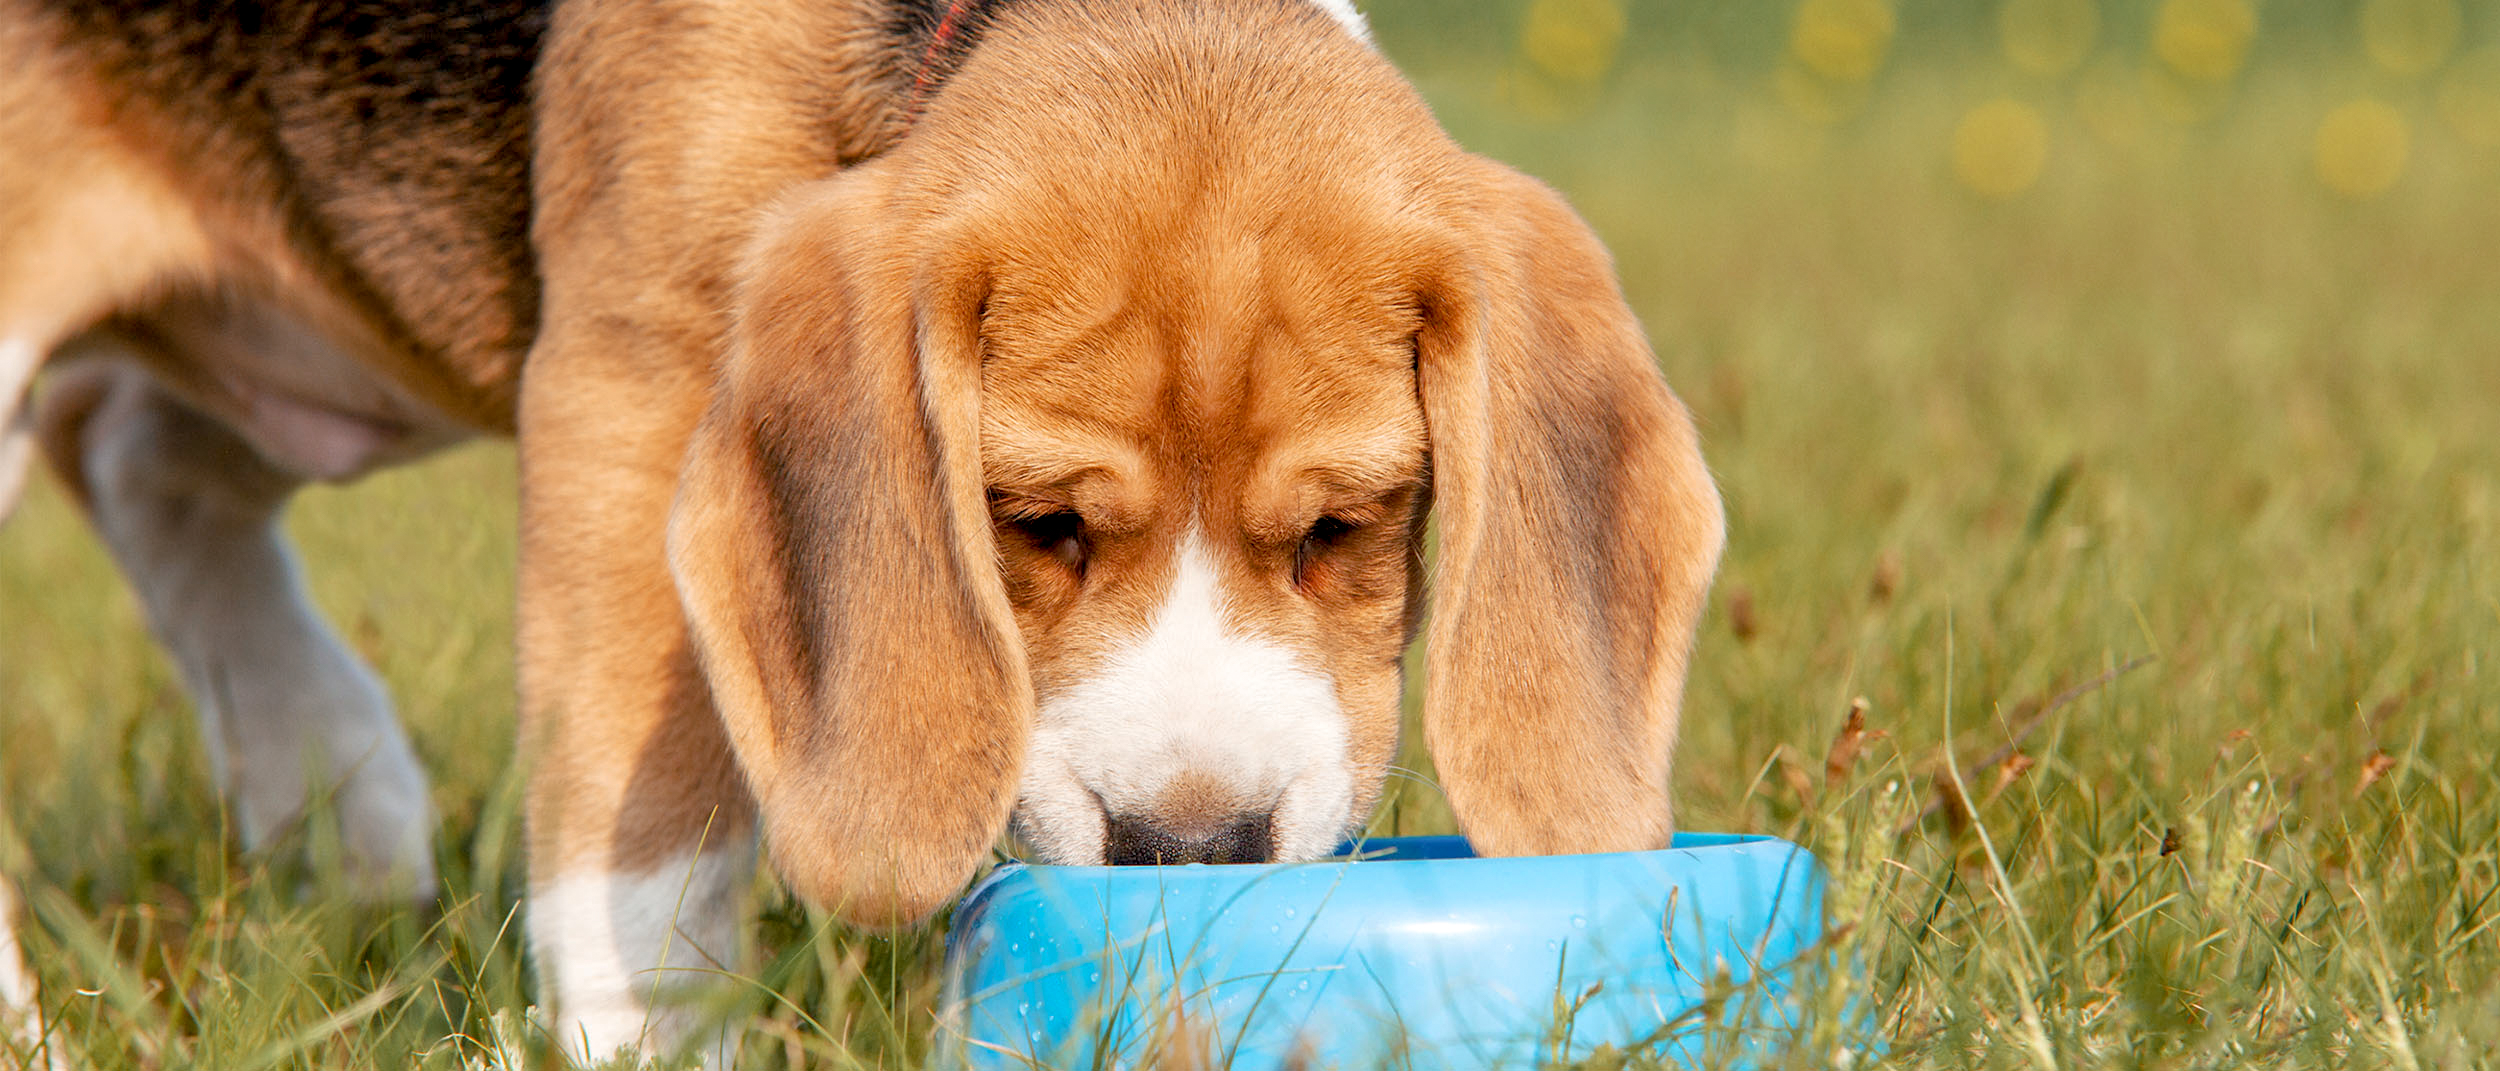 Beagle cachorro parado al aire libre comiendo de un plato azul.